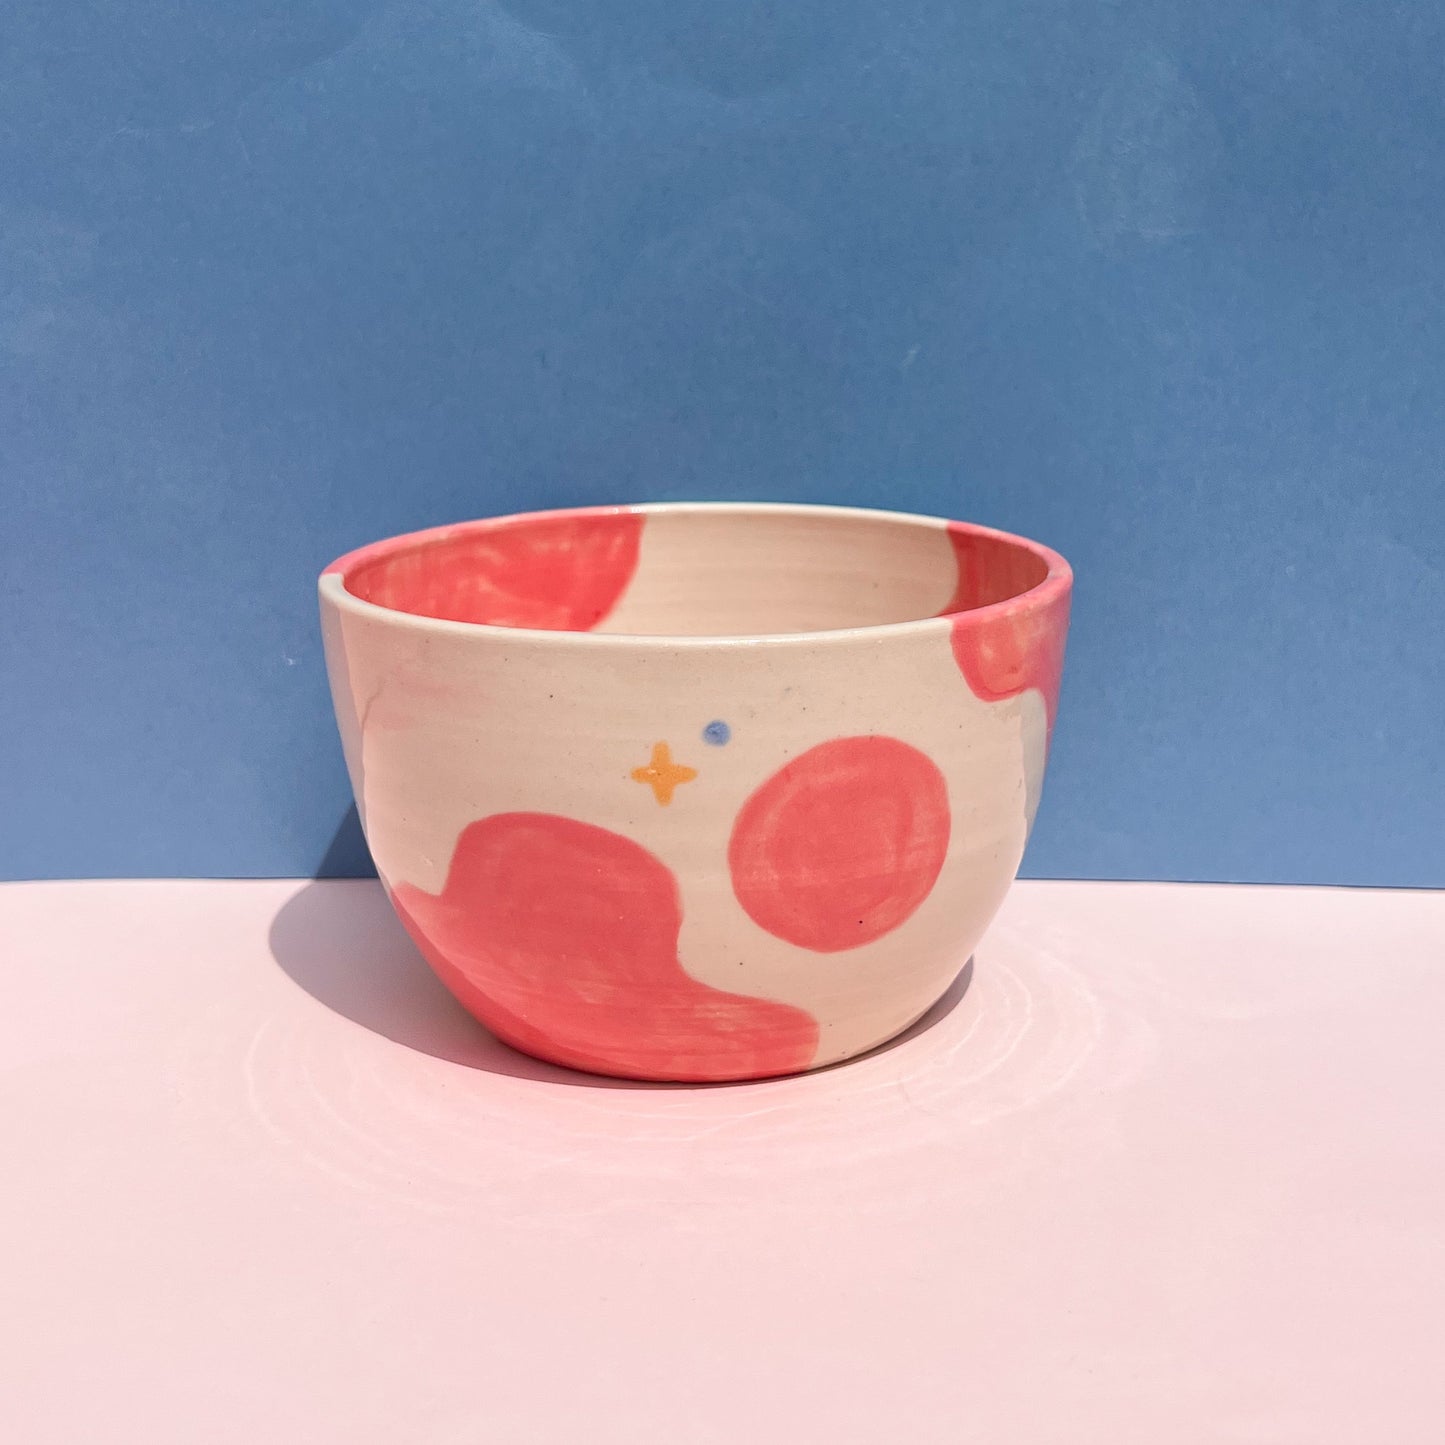 Pink moo moo bowl